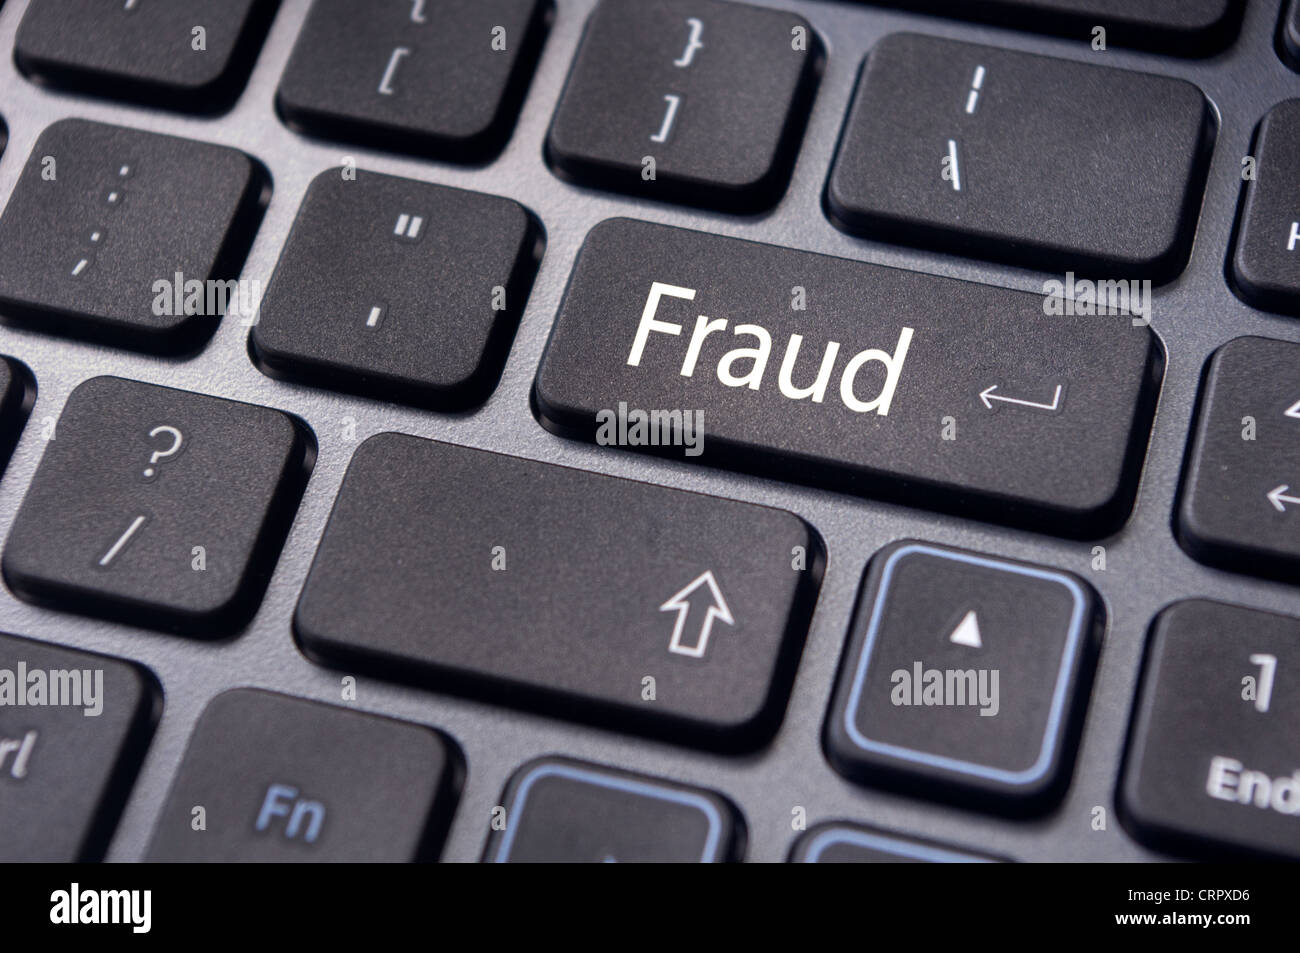 El fraude, la criminalidad en internet, con un mensaje sobre la tecla Enter del teclado del ordenador. Foto de stock